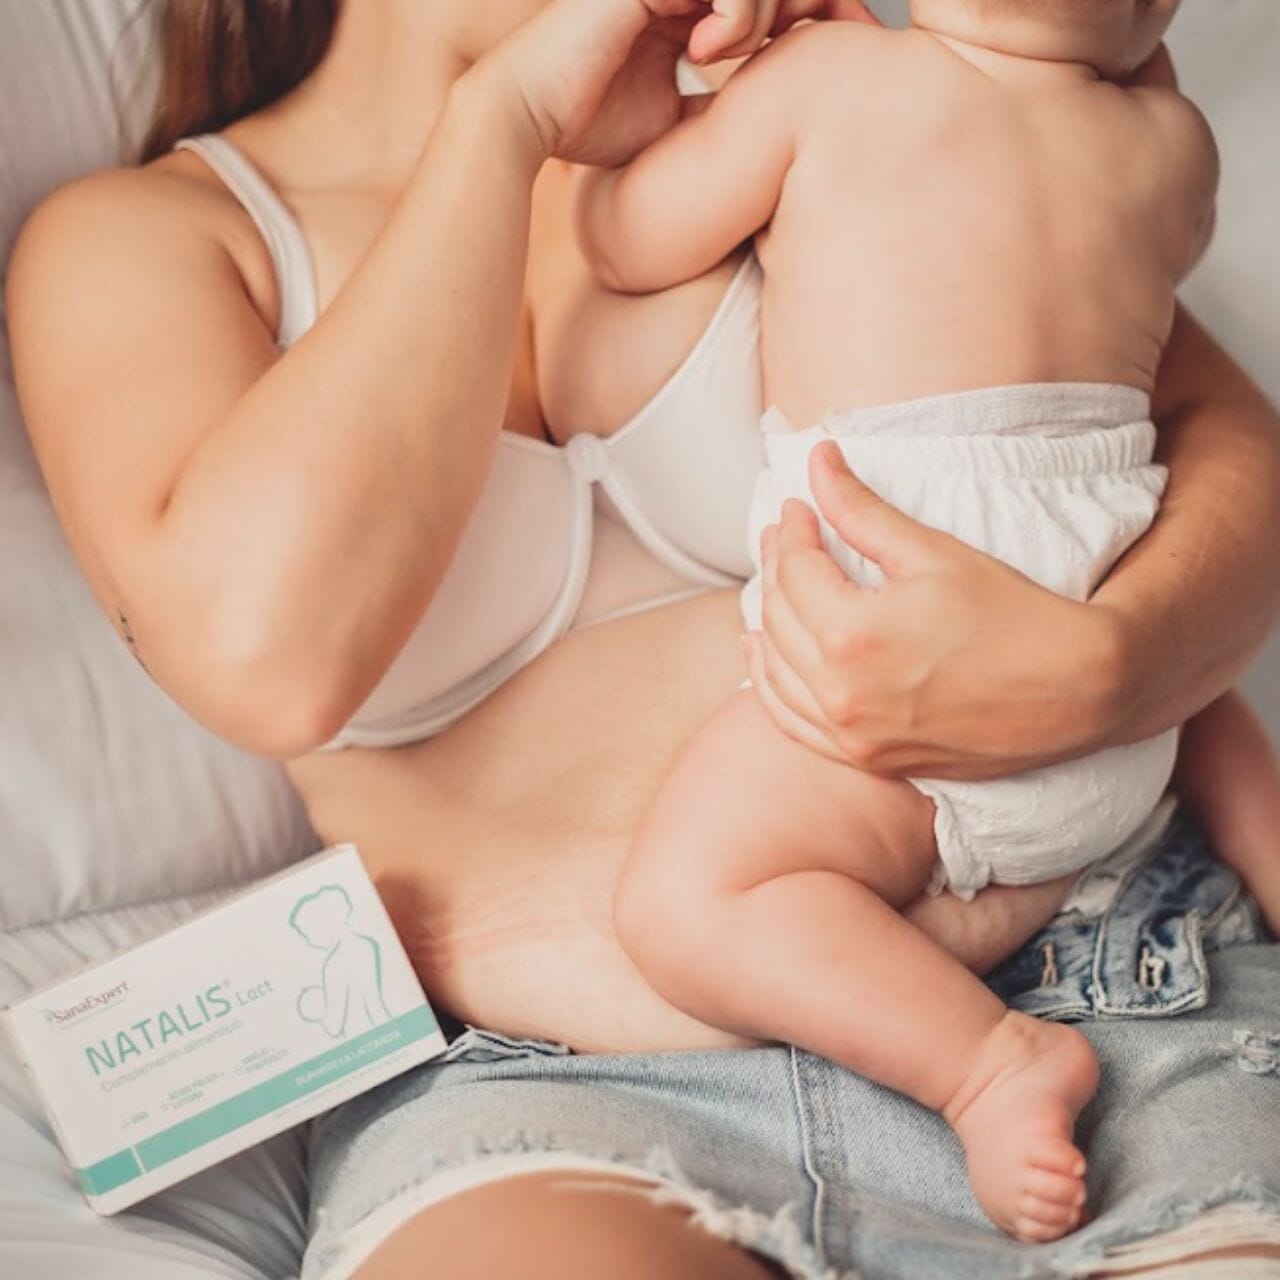 Junge Mutter beim Stillen ihres Babys, neben ihr eine Packung Natalis Lact auf dem Schoß.